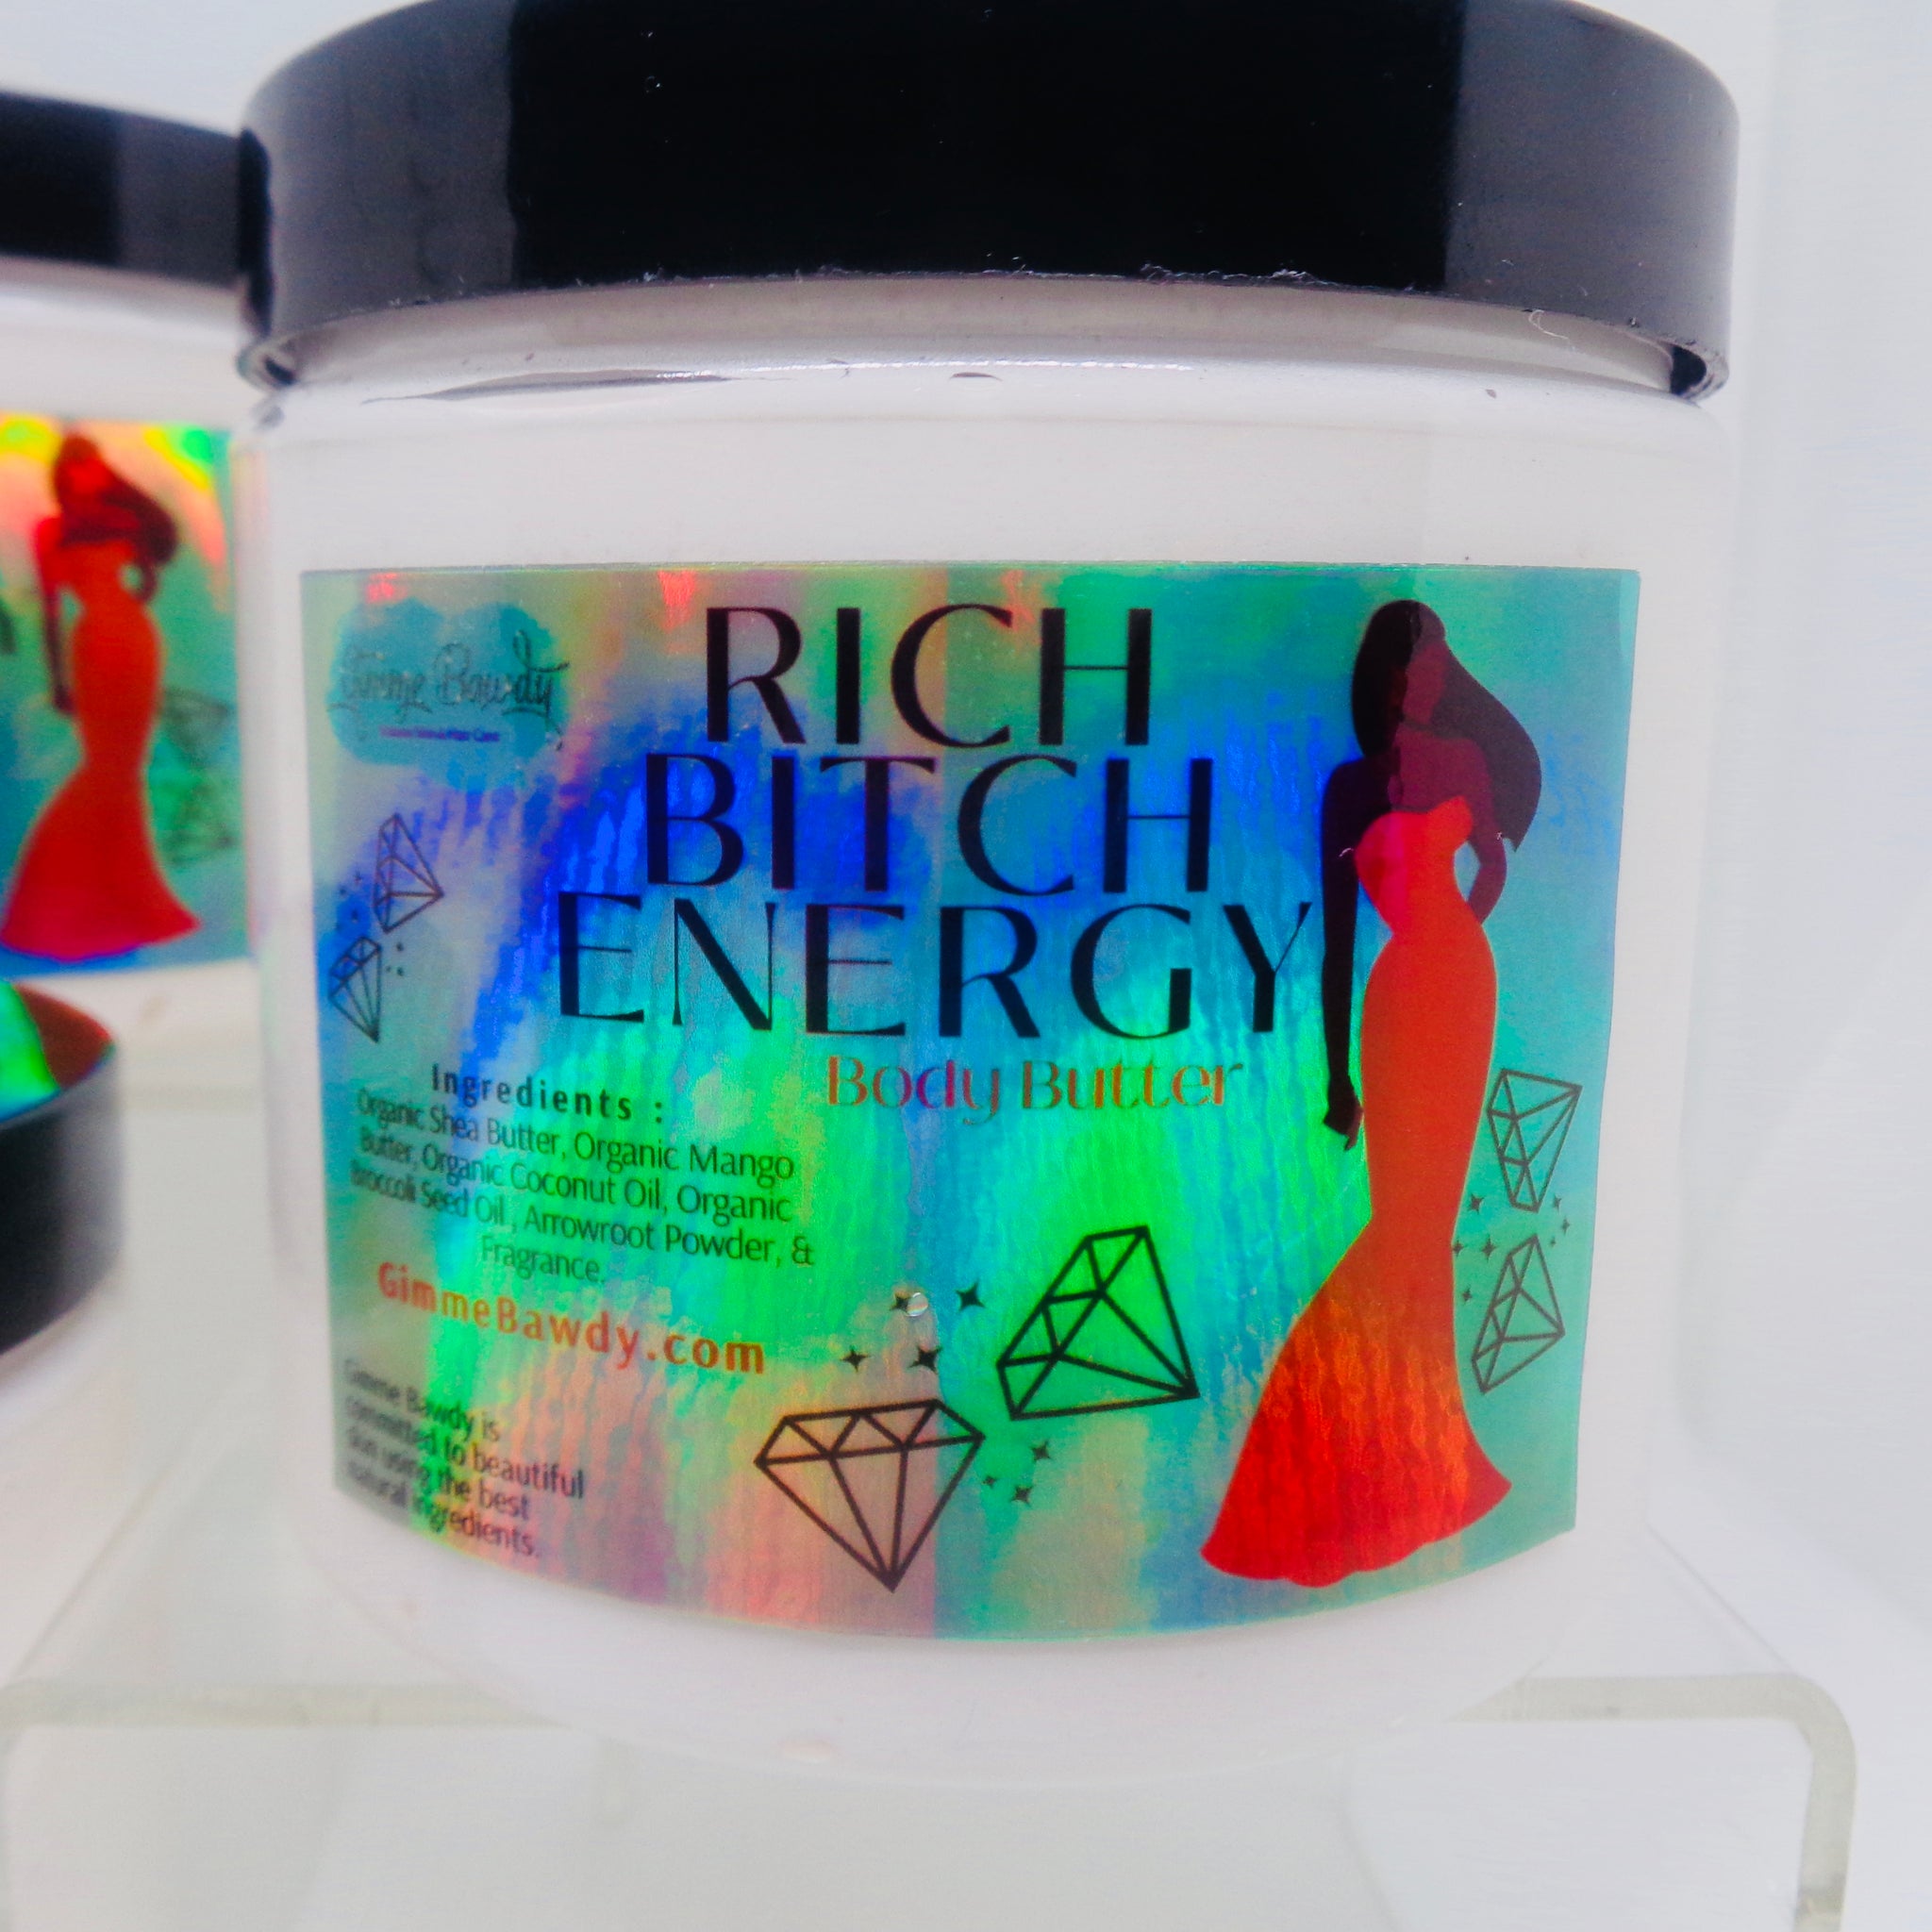 Rich B*tch Energy Bundle